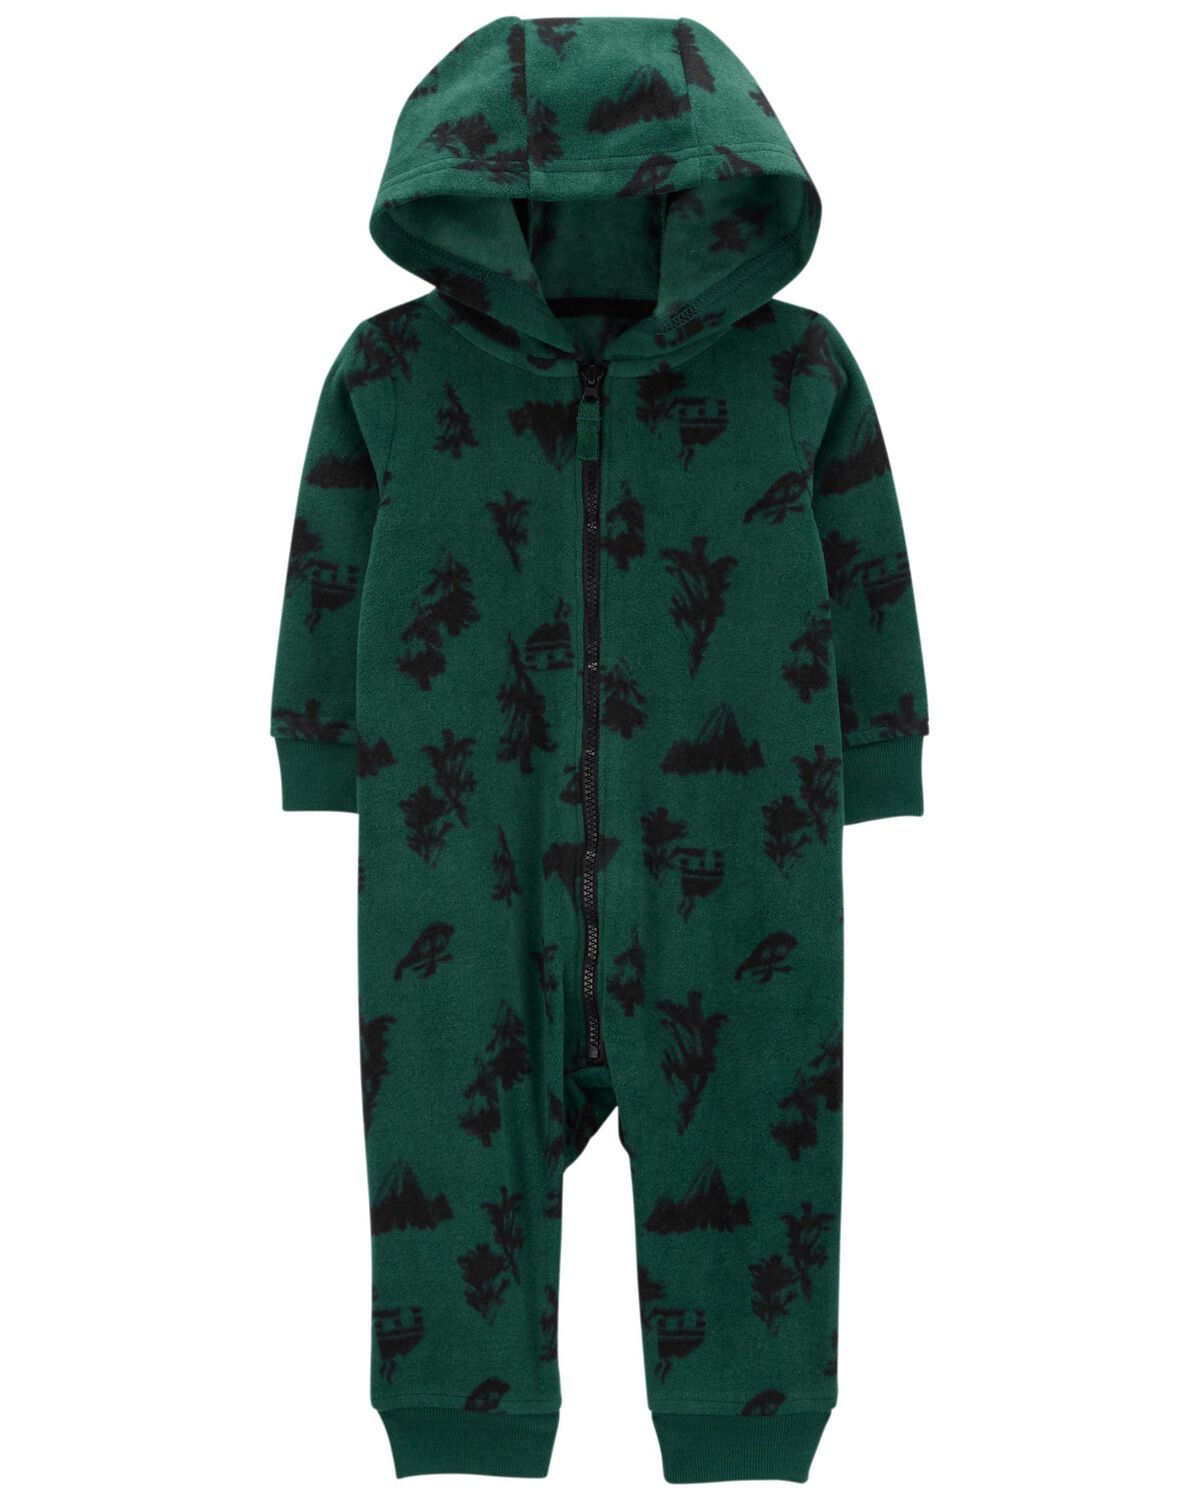 Green Baby Hooded Fleece Jumpsuit | carters.com | Carter's